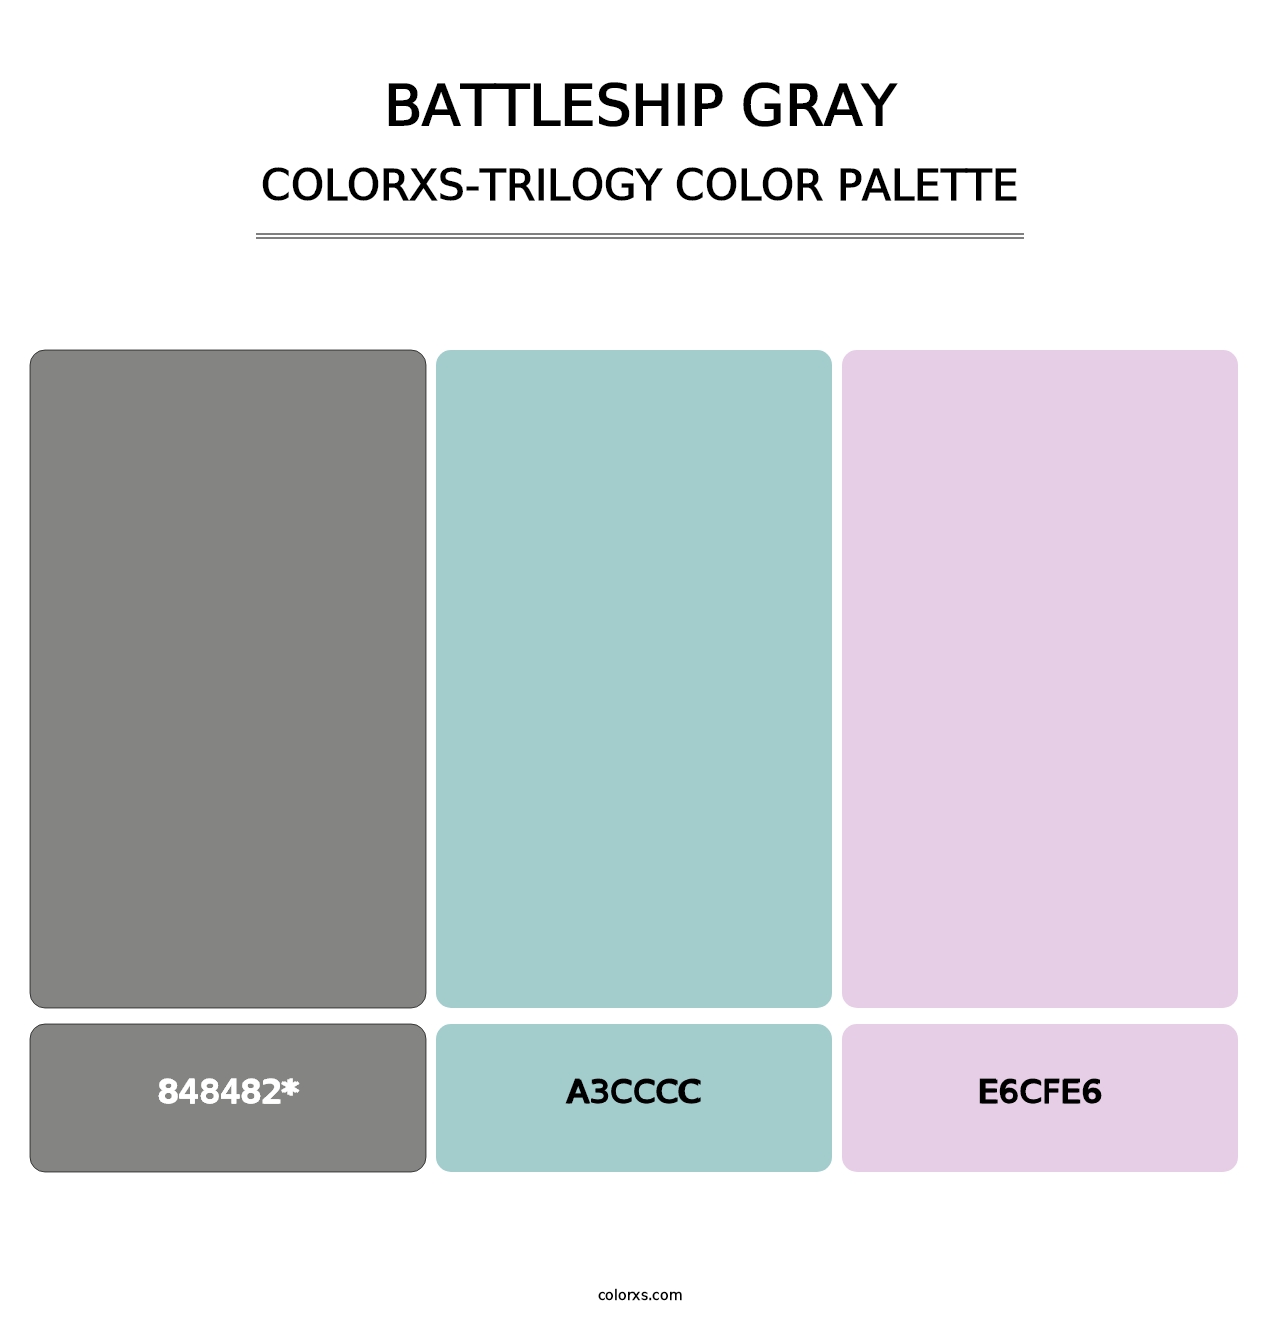 Battleship Gray - Colorxs Trilogy Palette